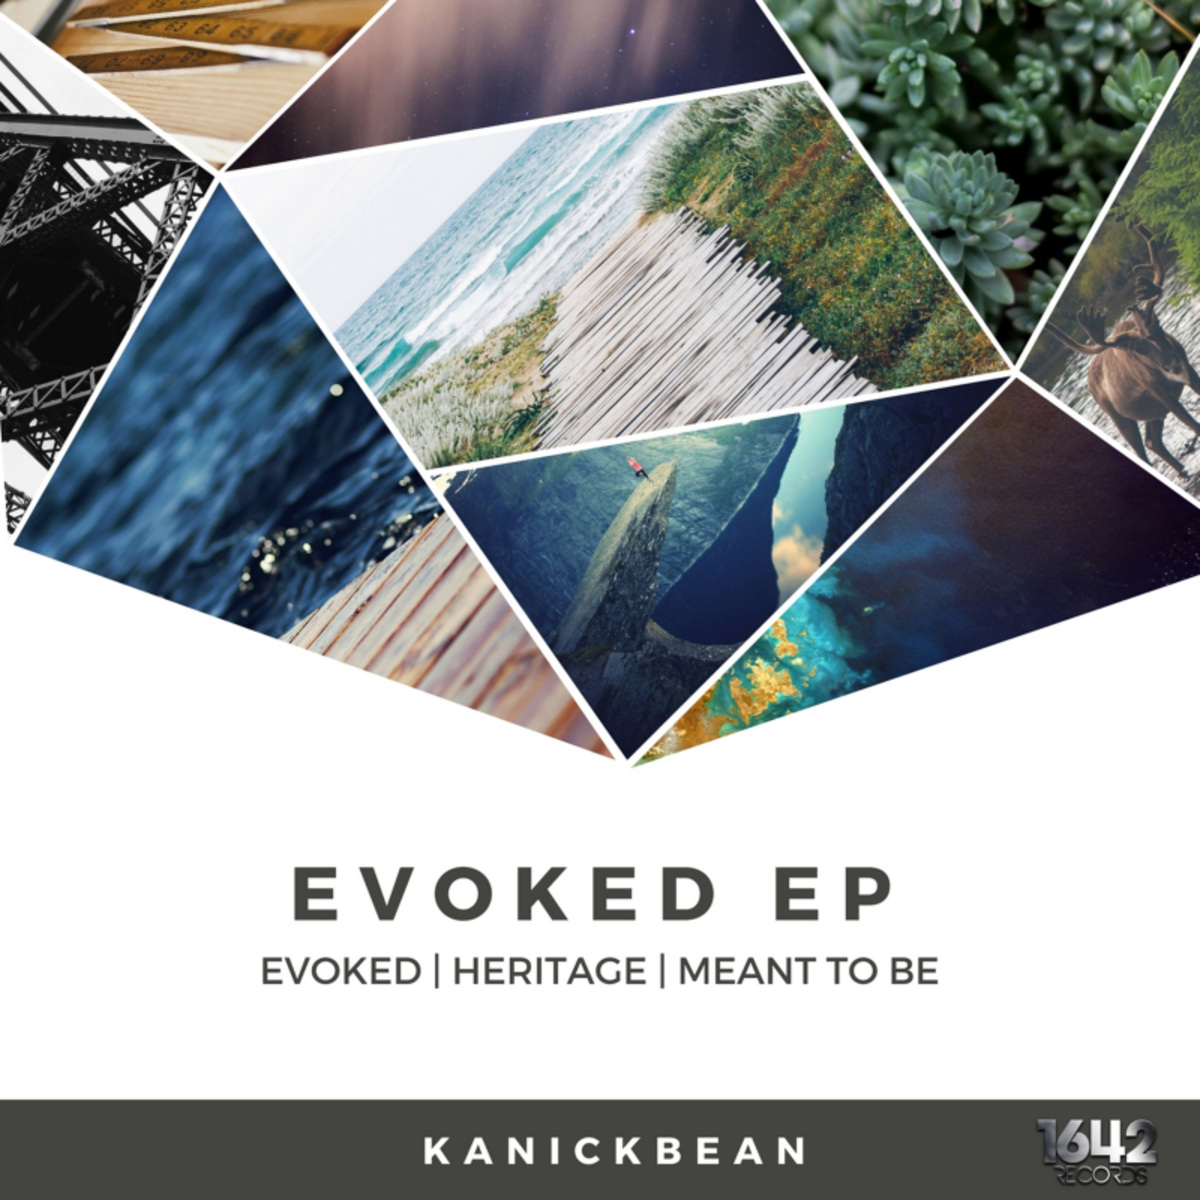 KanickBean - Evoked EP / 1642 Records